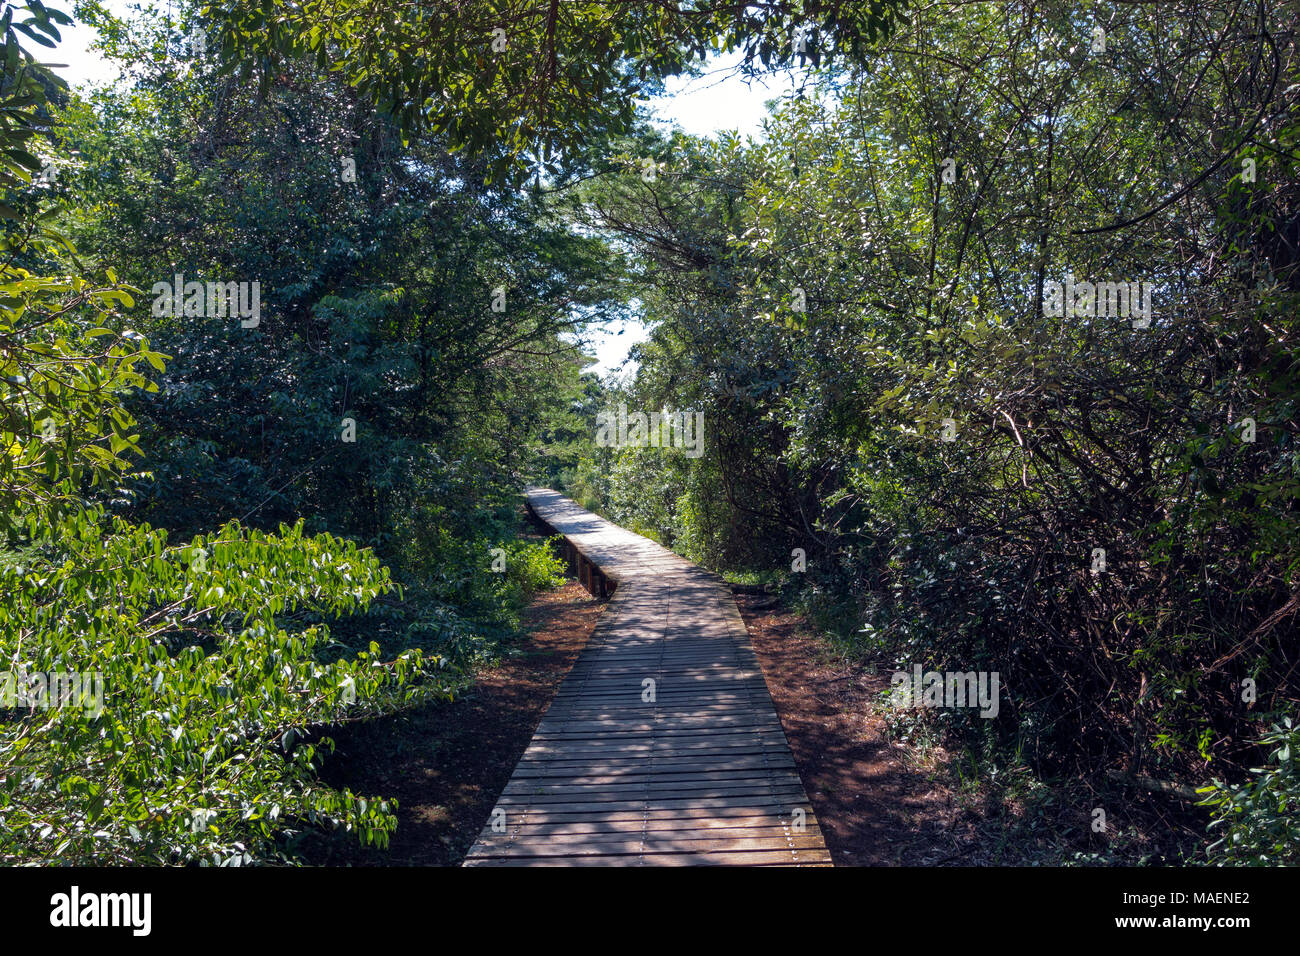 Ombreggiato vuota passerella in legno che conduce attraverso il verde della vegetazione delle paludi a St Lucia Estuary in Zululand, KwaZulu Natal, Sud Africa Foto Stock